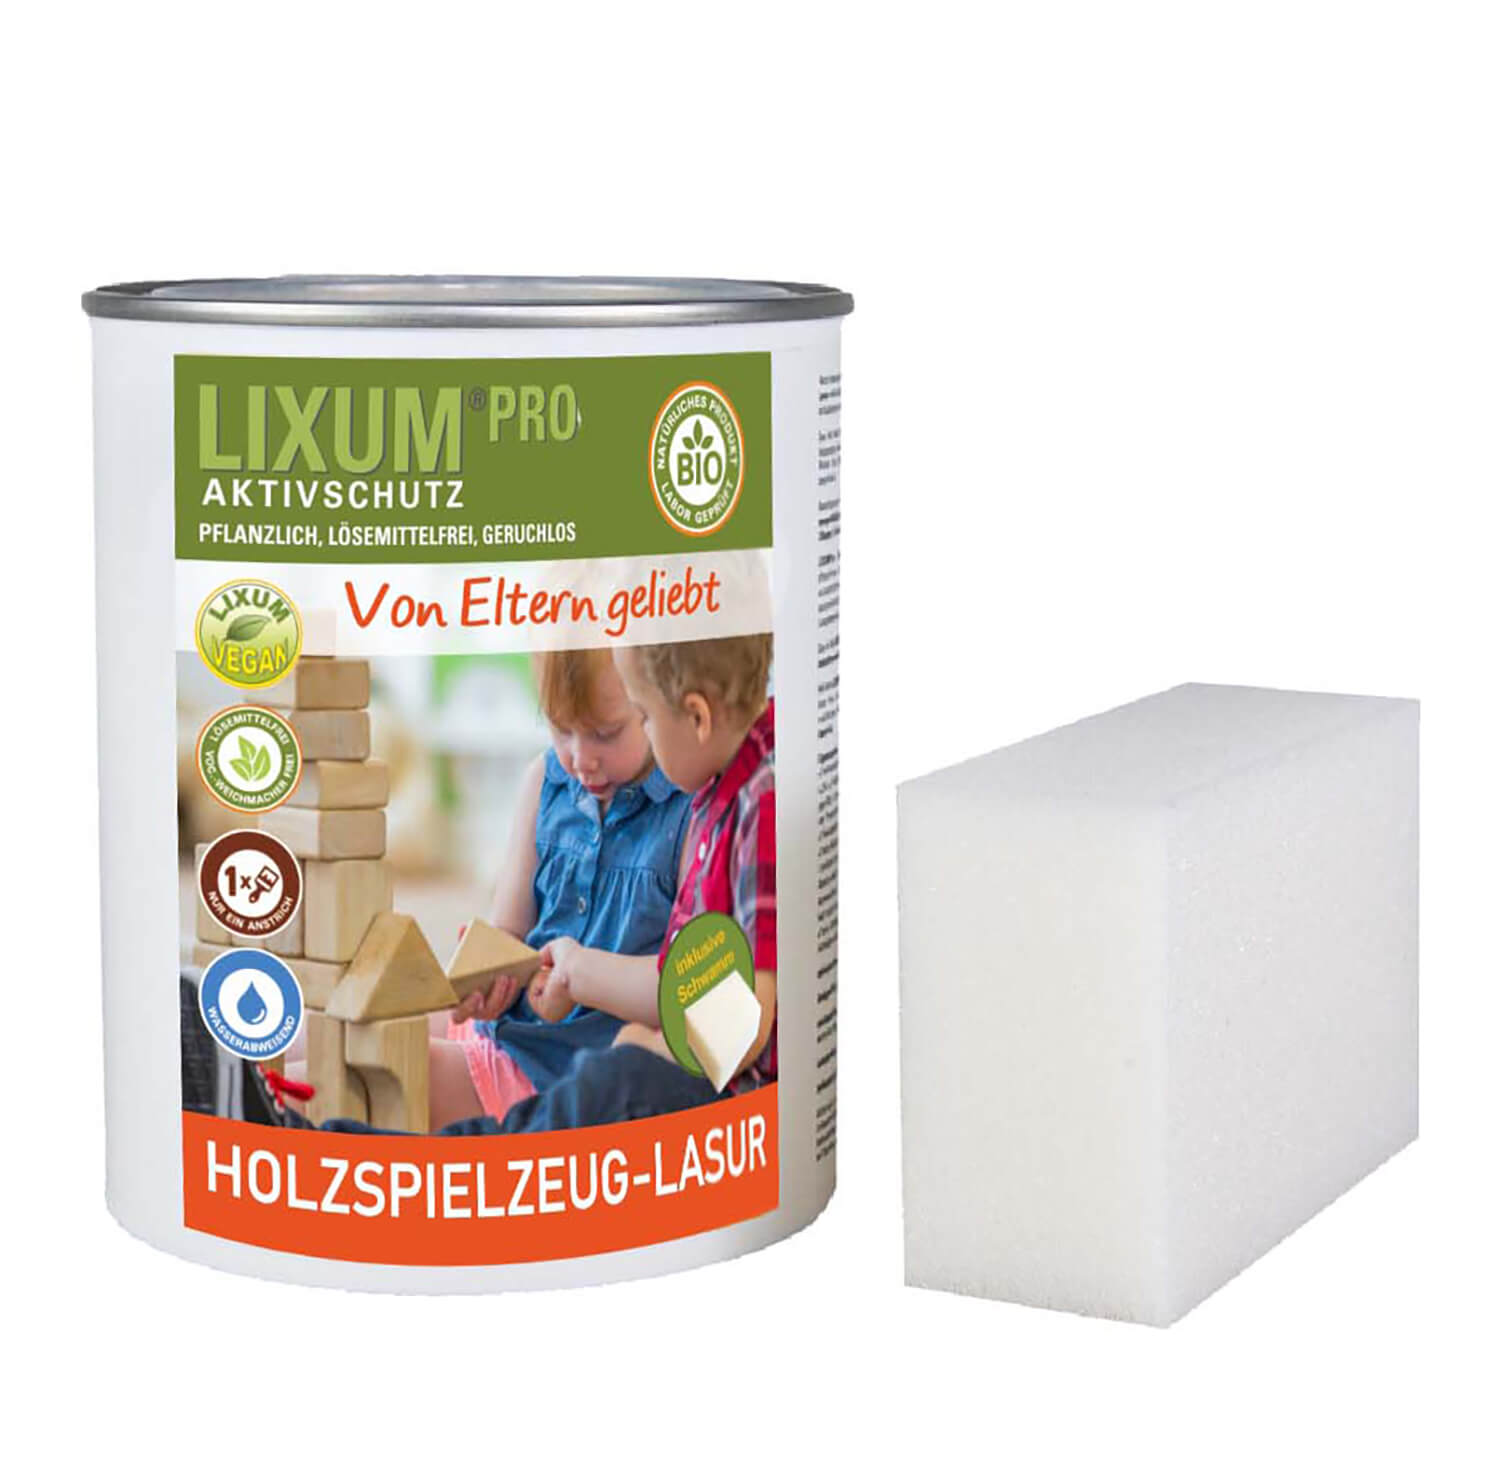     LIXUM PRO 100% biologische & natürliche Holzspielzeug Lasur